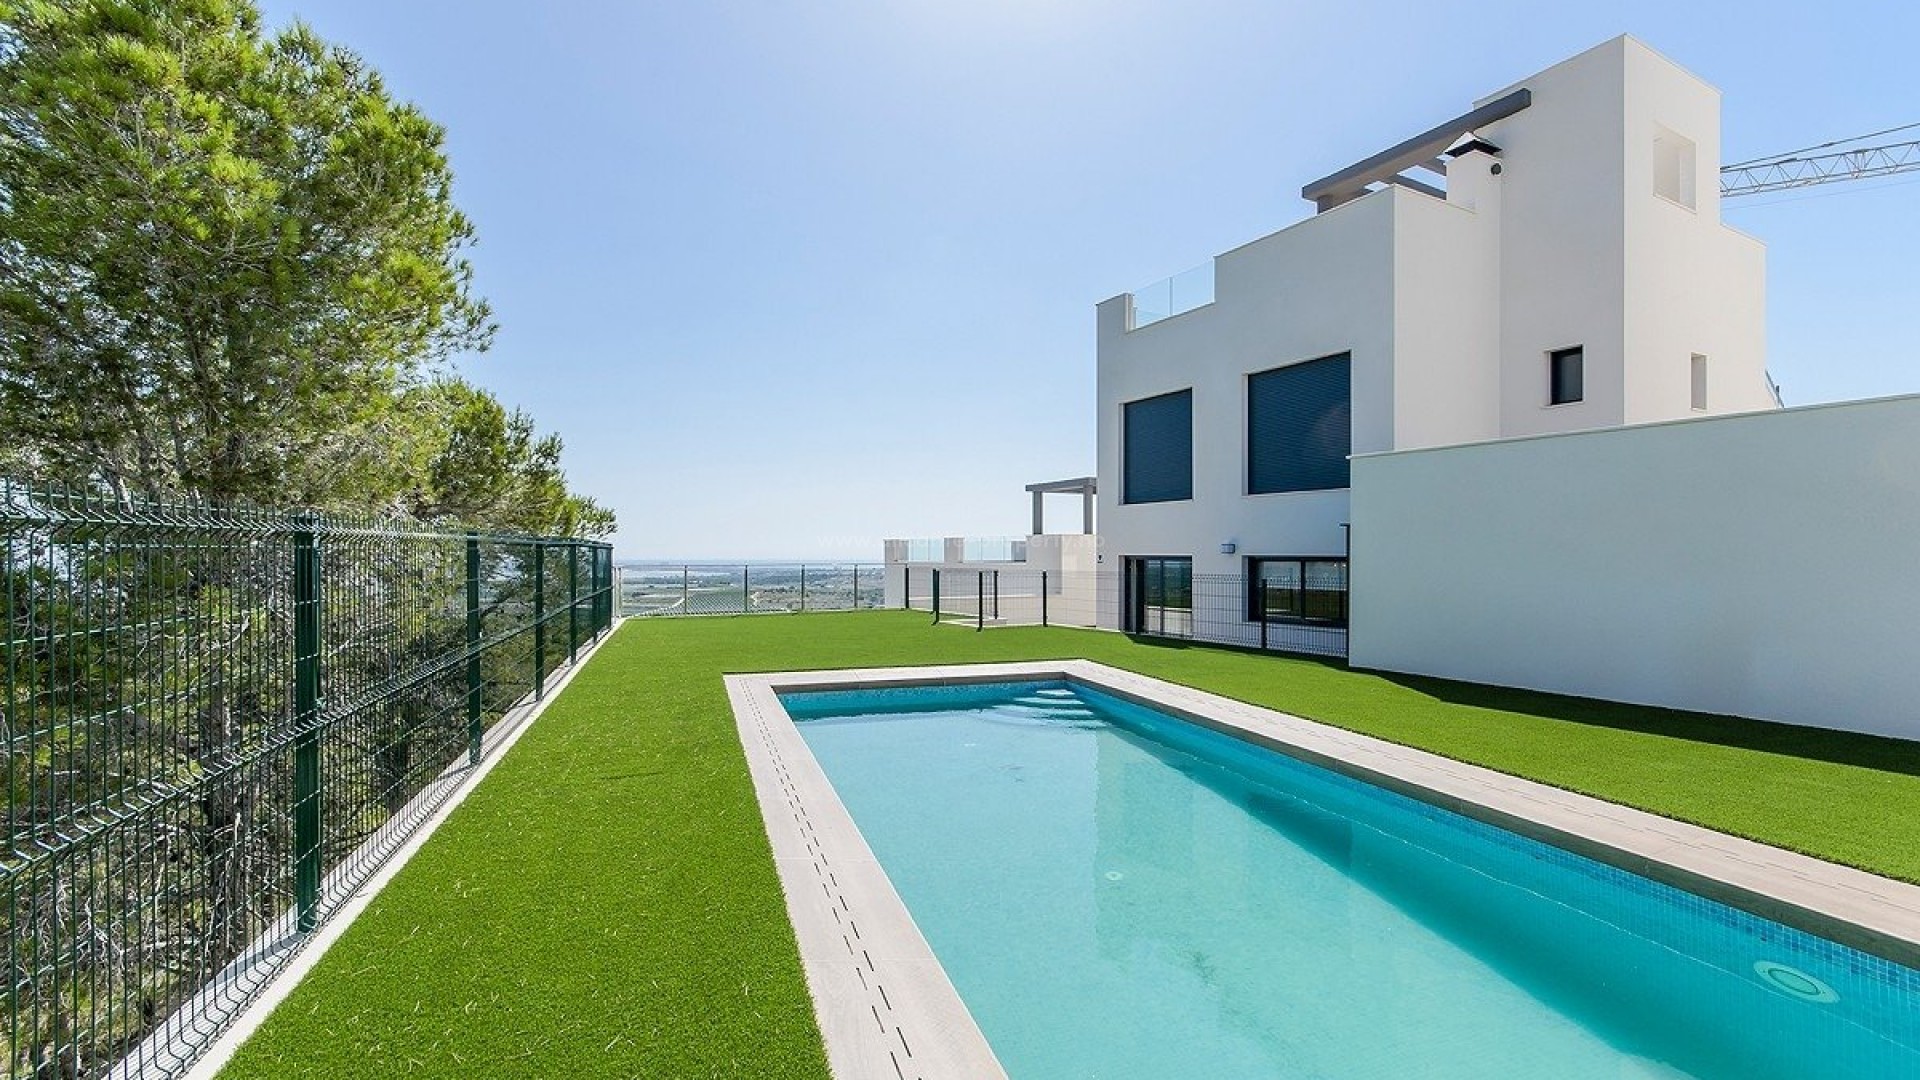 New build villa/bungalows in San Miguel de Salinas, 2/3 bedrooms, 2 bathrooms, private solarium or garden, communal area with pool and garden